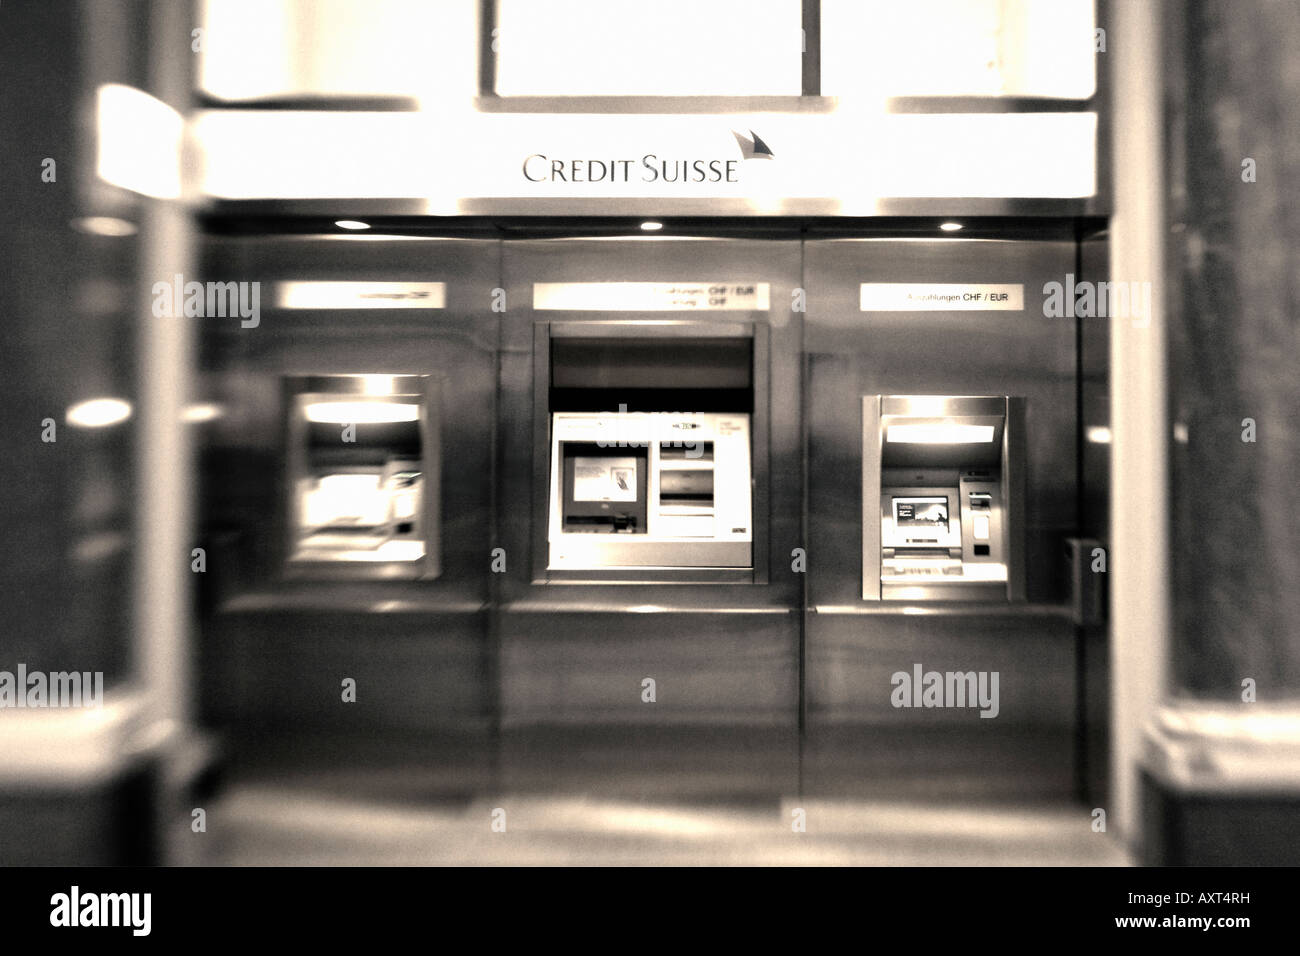 CH Zuerich Bank Credit Suisse interieur ATM Schweiz Zuerich Credit Suisse Geldautomat im Lichthof an der Bahnhofstrasse Stock Photo